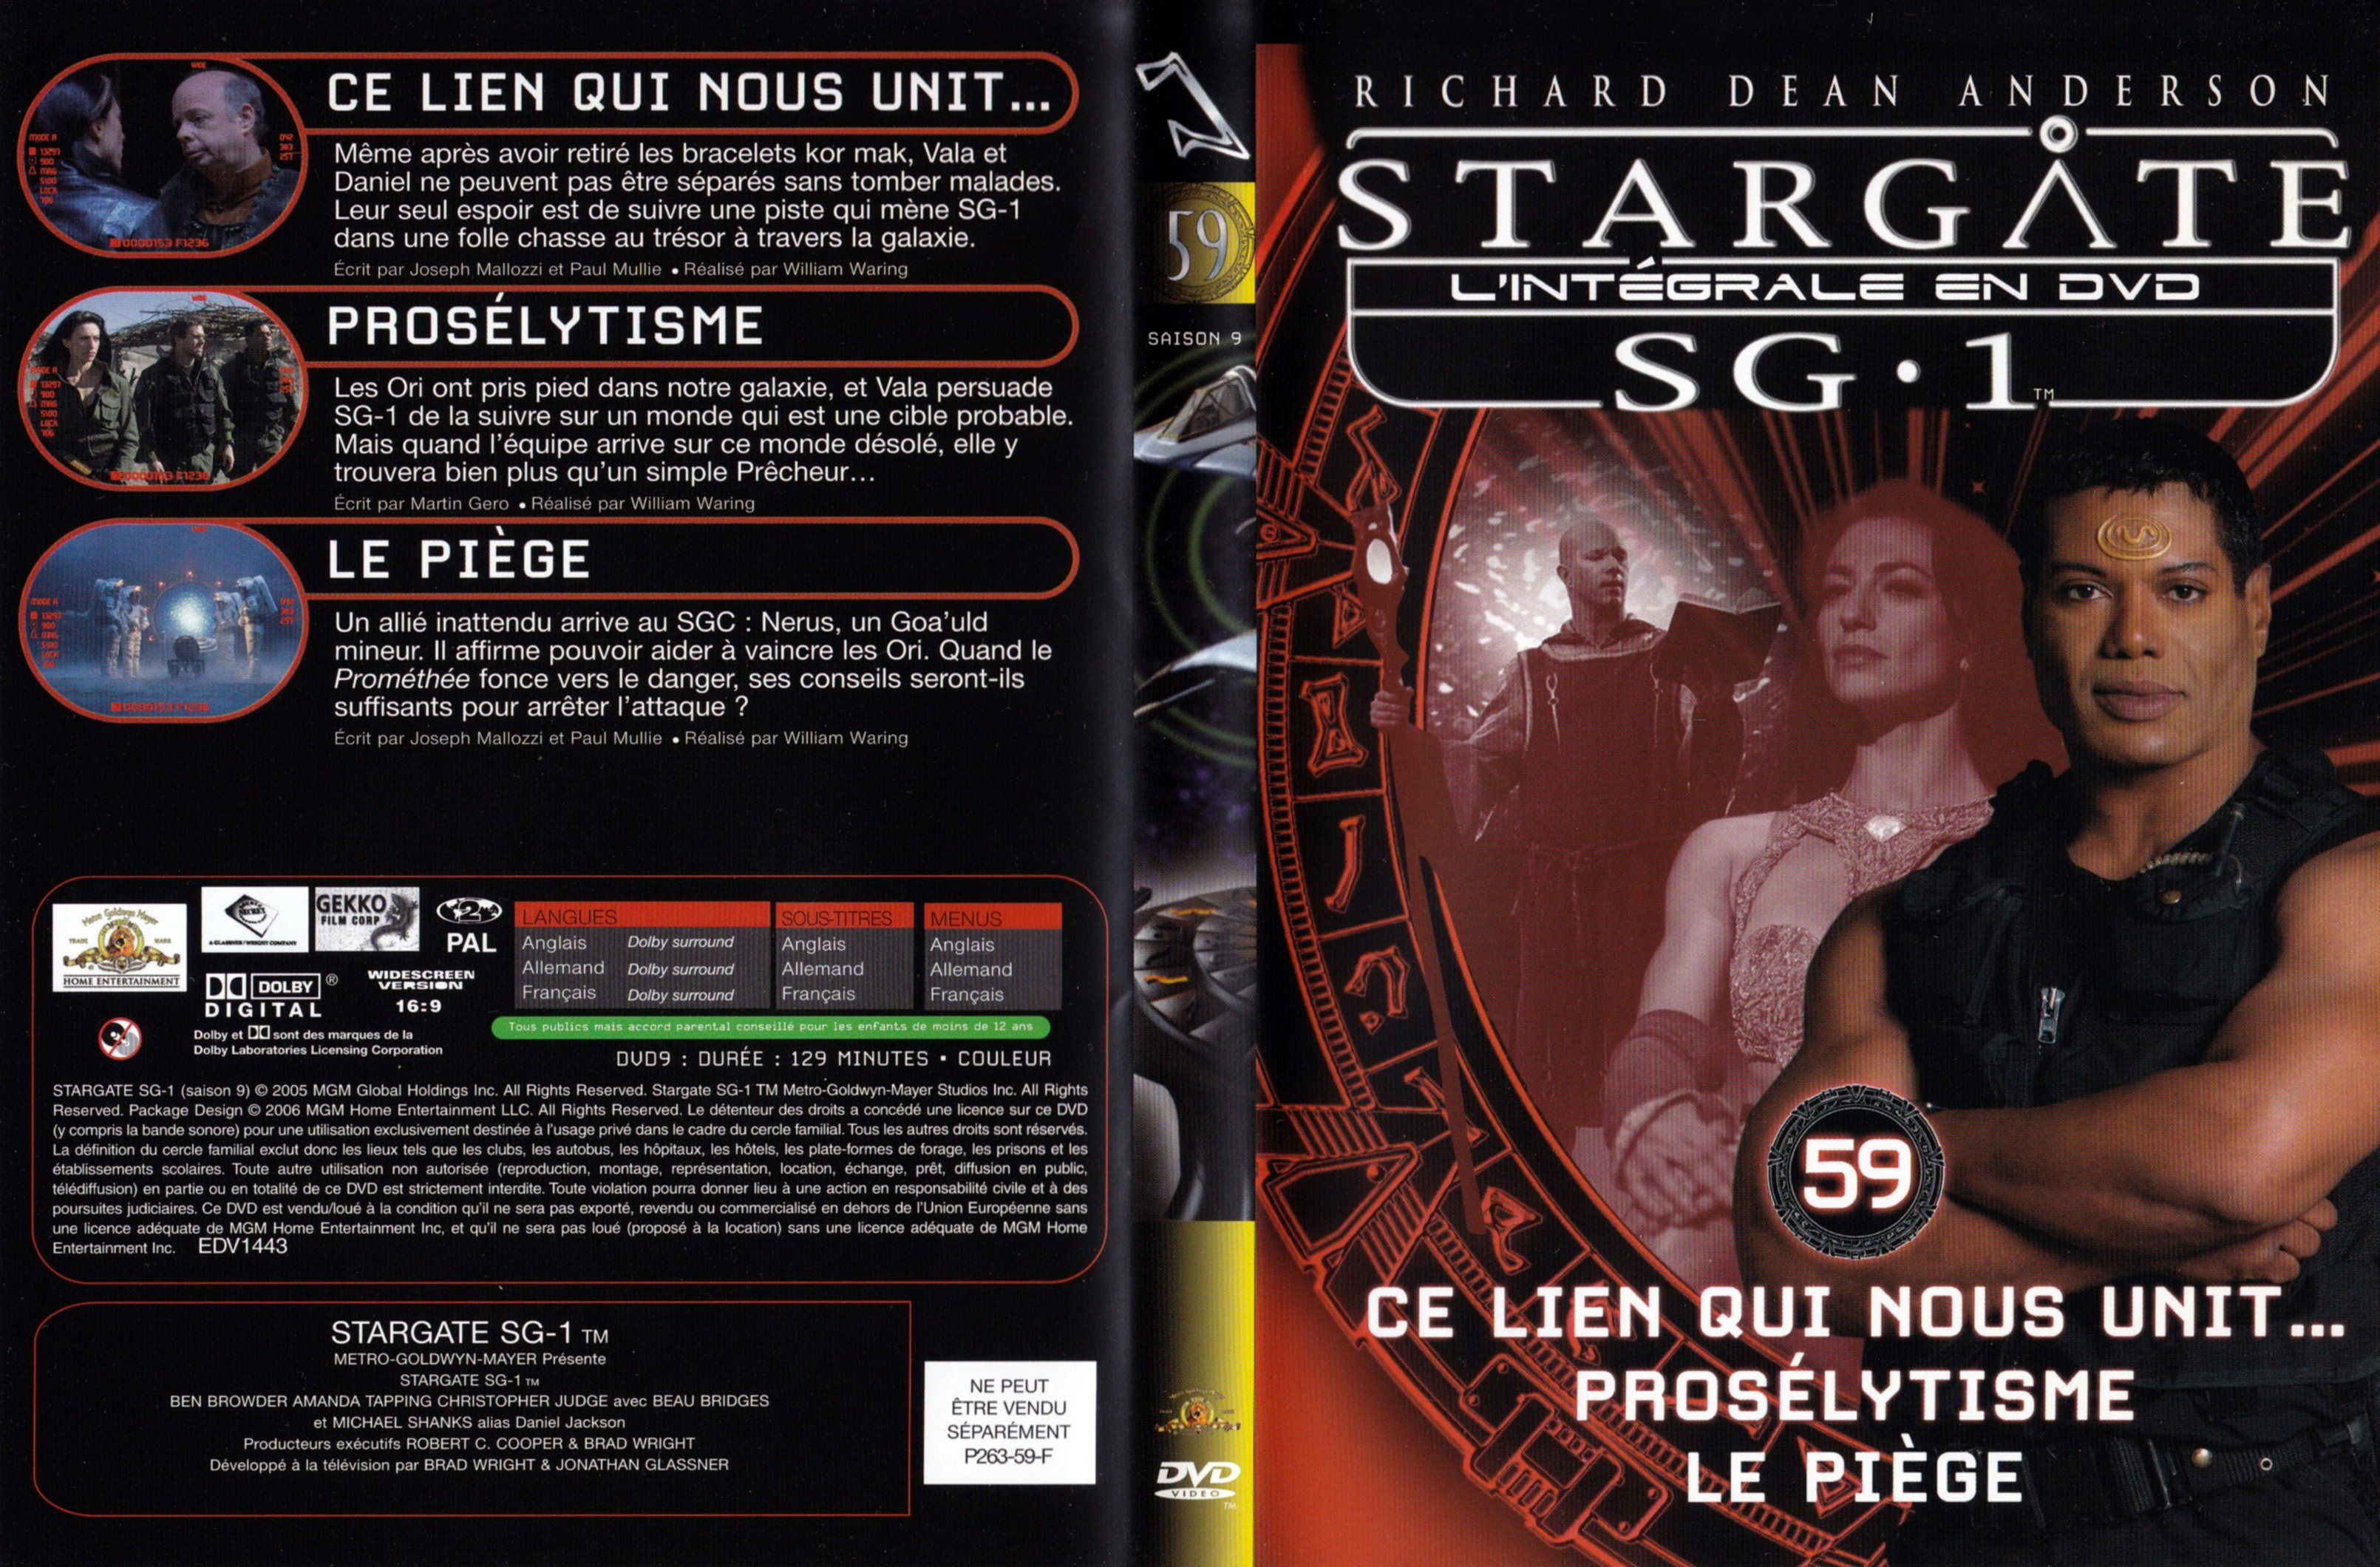 Jaquette DVD Stargate SG1 Intgrale Saison 9 vol 59